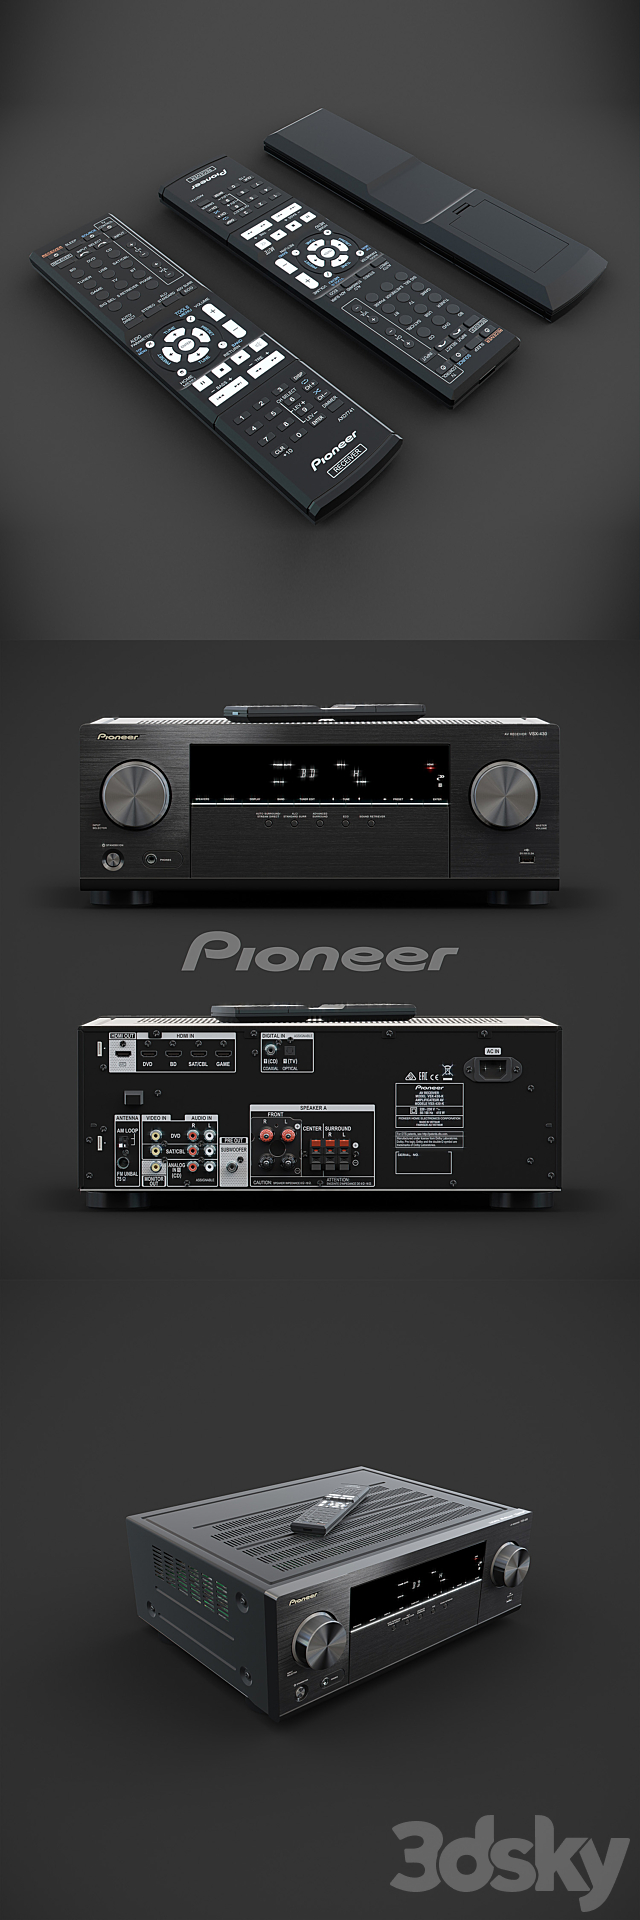 Pioneer AV-receiver VSX-430-K 3DSMax File - thumbnail 1